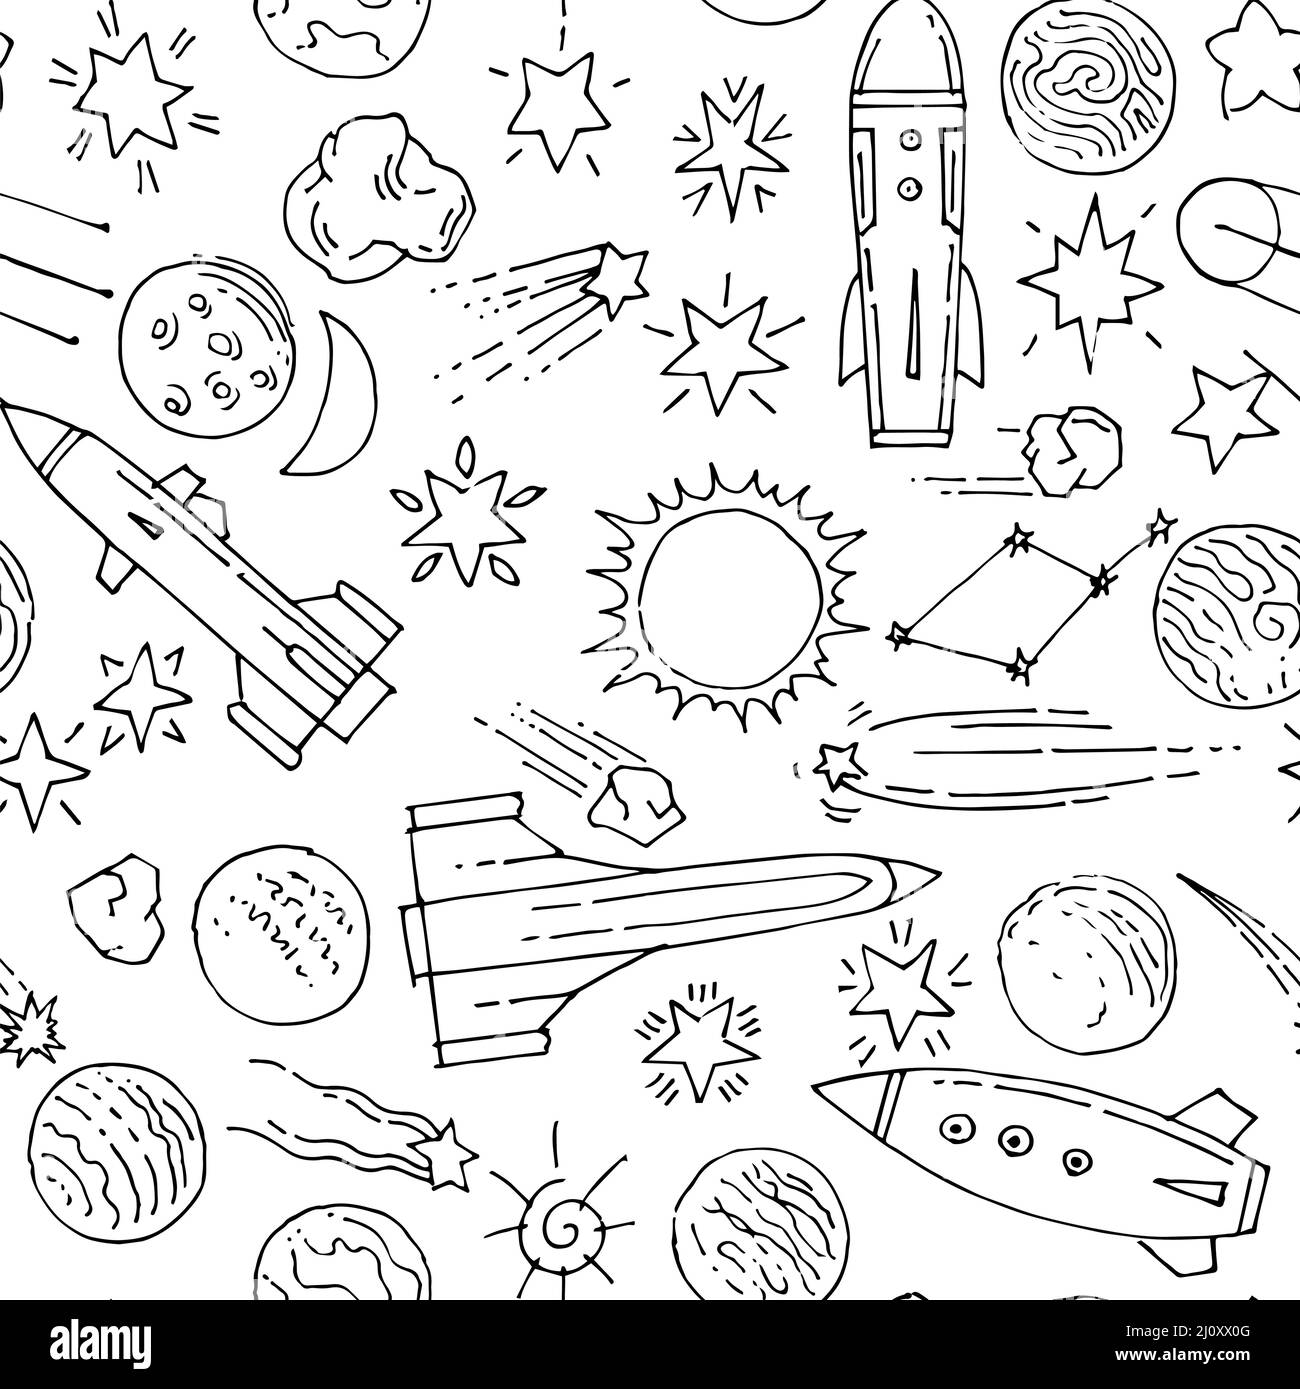 Leerraum im Hintergrund. Nahtloses Muster. Planeten und Sterne. Schönes Weltraumobjekt. Einfache Doodle-Zeichnung im kindischen Stil. Skizze umreißen. Handzeichnung Stock Vektor